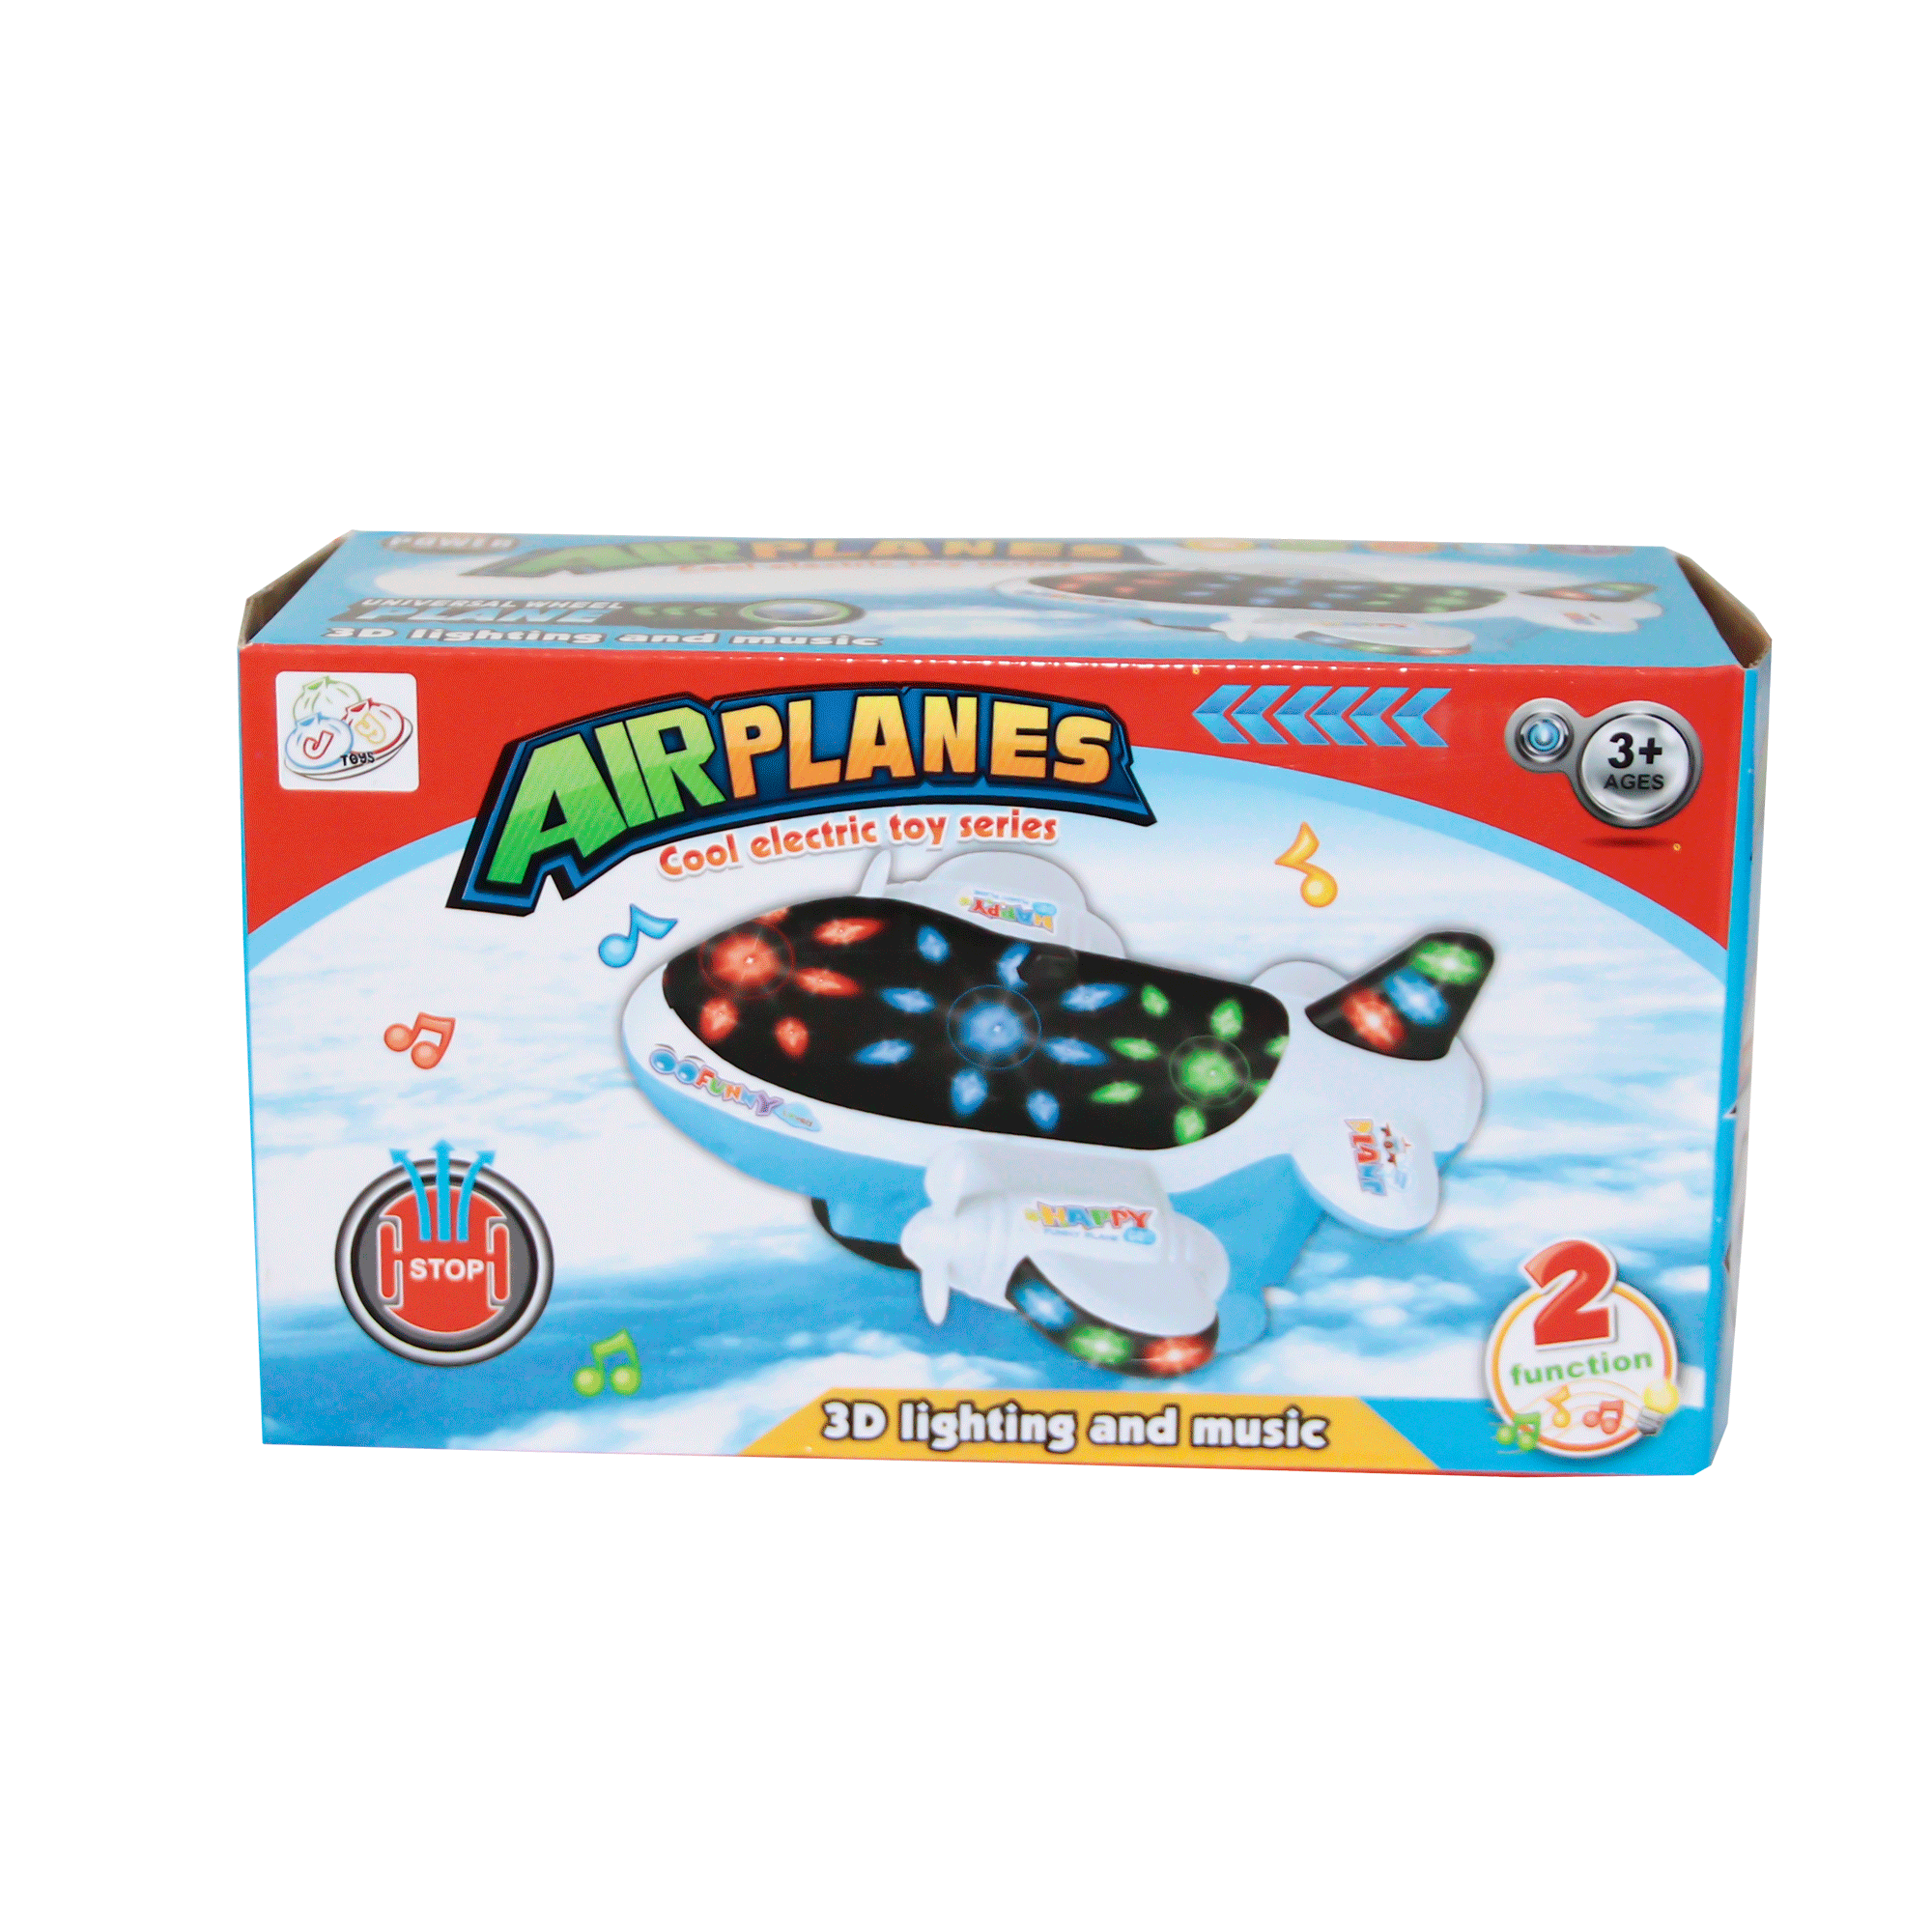 Toy plane 300-67 1188 